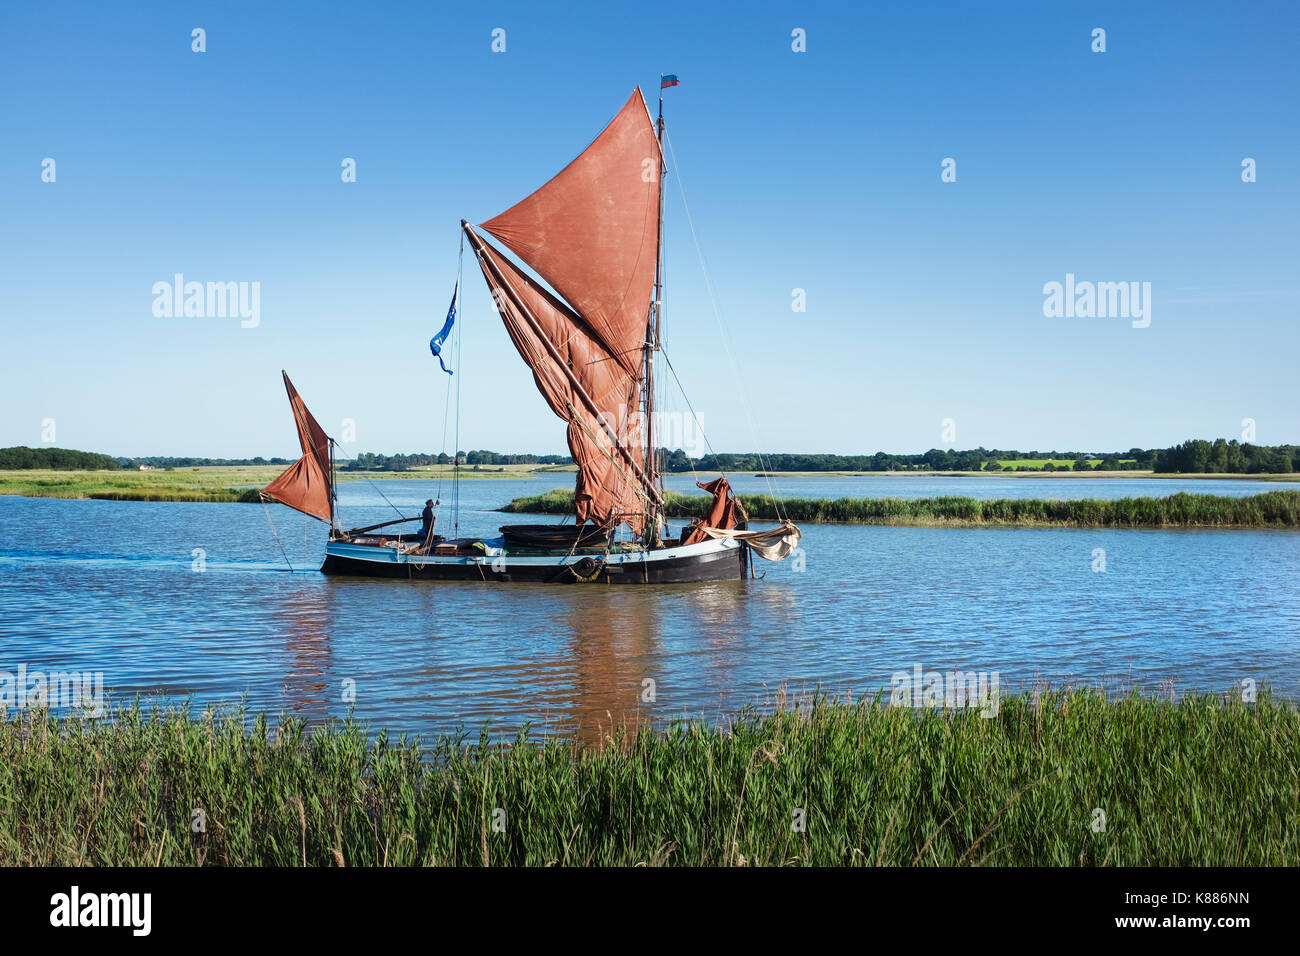 Traditionelle Segelboot mit rotem Segel und einem gaffelrigg, Segeln mitten auf dem Wasser auf ein Rohr oder Flussmündung. Stockfoto